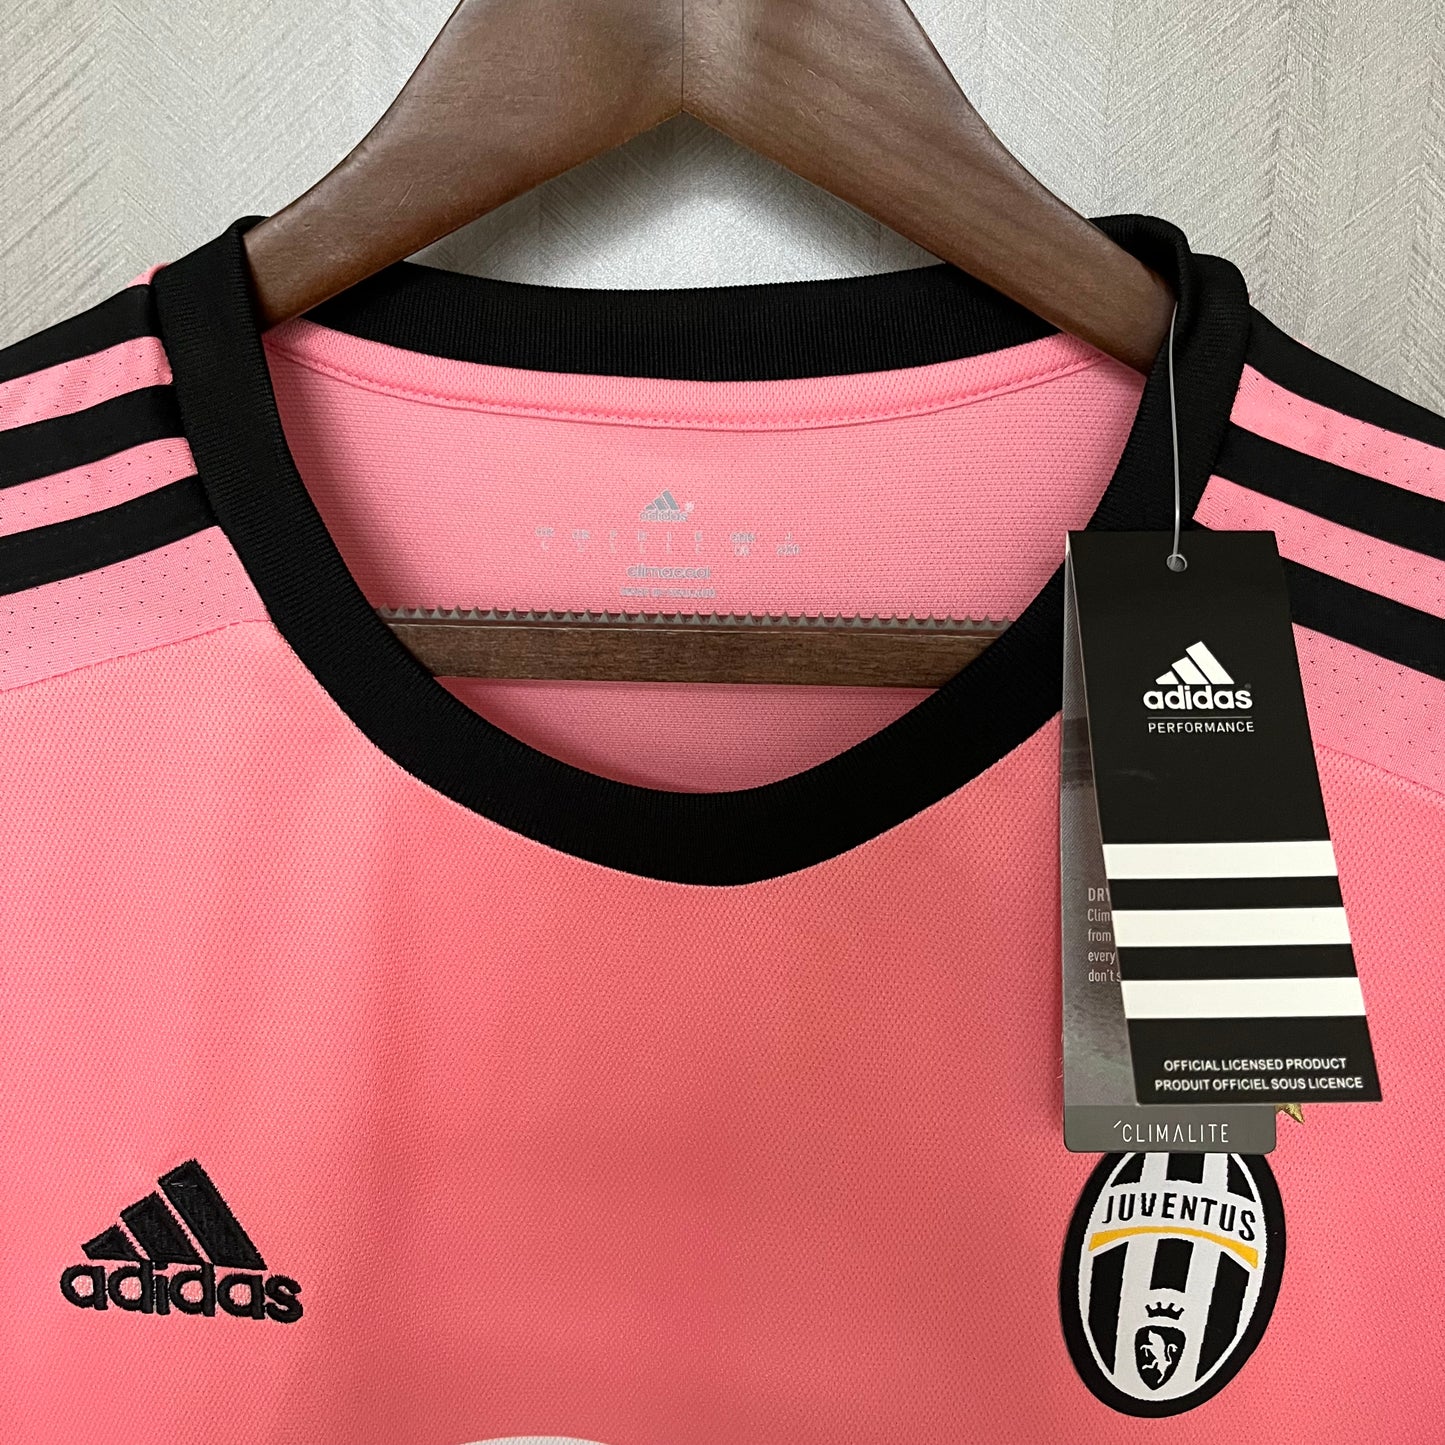 Maglie storiche da trasferta della Juventus 2015-16 